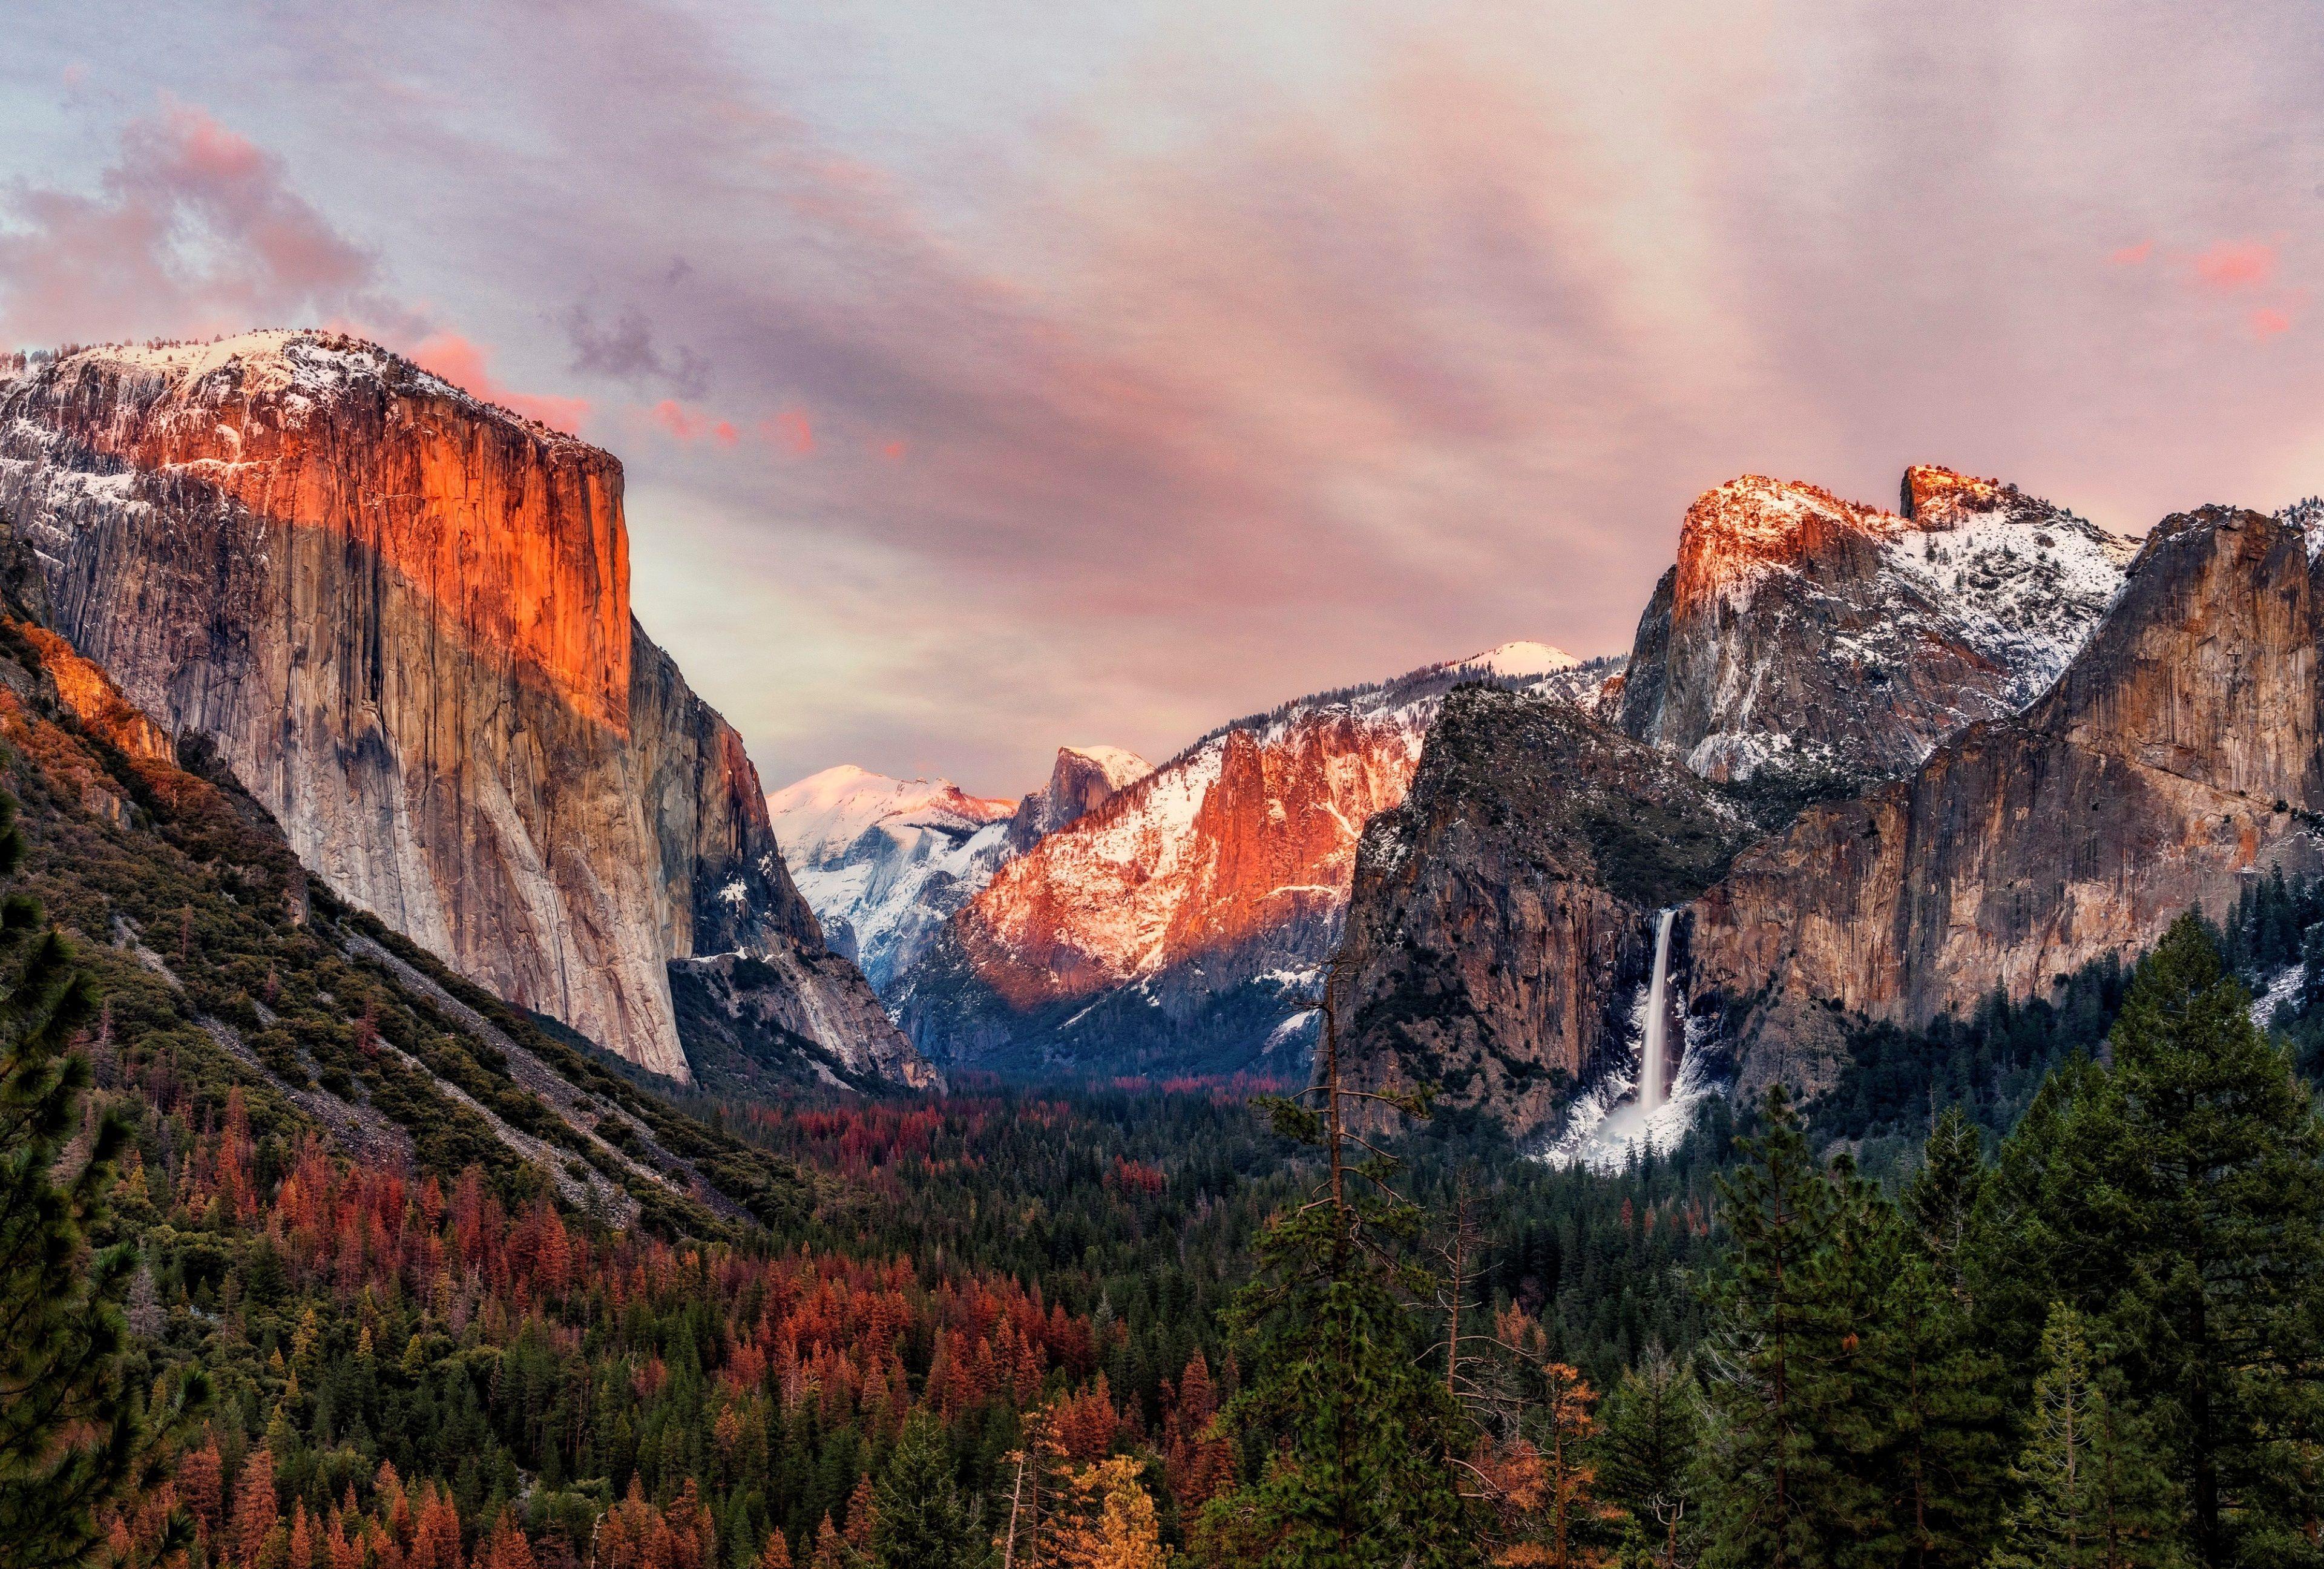 4K Yosemite Wallpapers: Nếu bạn yêu thích ảnh nền tuyệt đẹp cùng công nghệ 4K, hãy nhấn vào ngay 4k Yosemite wallpapers để tận hưởng những hình ảnh đỉnh cao của thiên nhiên. Bộ sưu tập chất lượng cao sẽ khiến bạn mãn nhãn và không thể rời mắt.